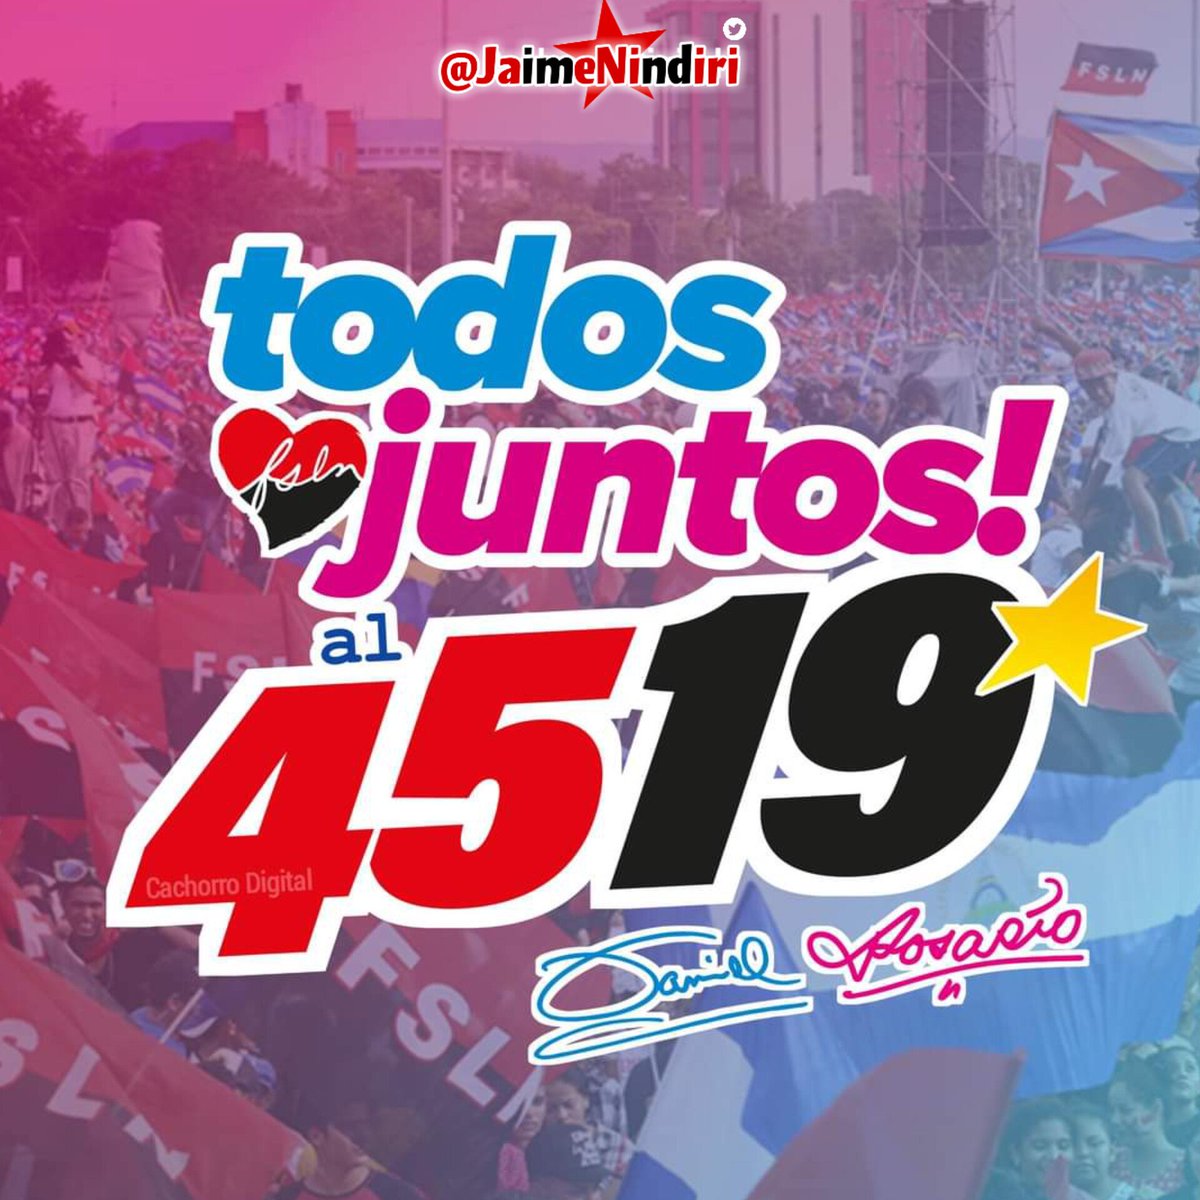 🚨Nos acercamos a nuestro glorioso #4519LaPatriaLaRevolución dónde todos y todas vamos juntos y juntas a celebrar las nuevas victorias.
#Nicaragua #PLOMO19